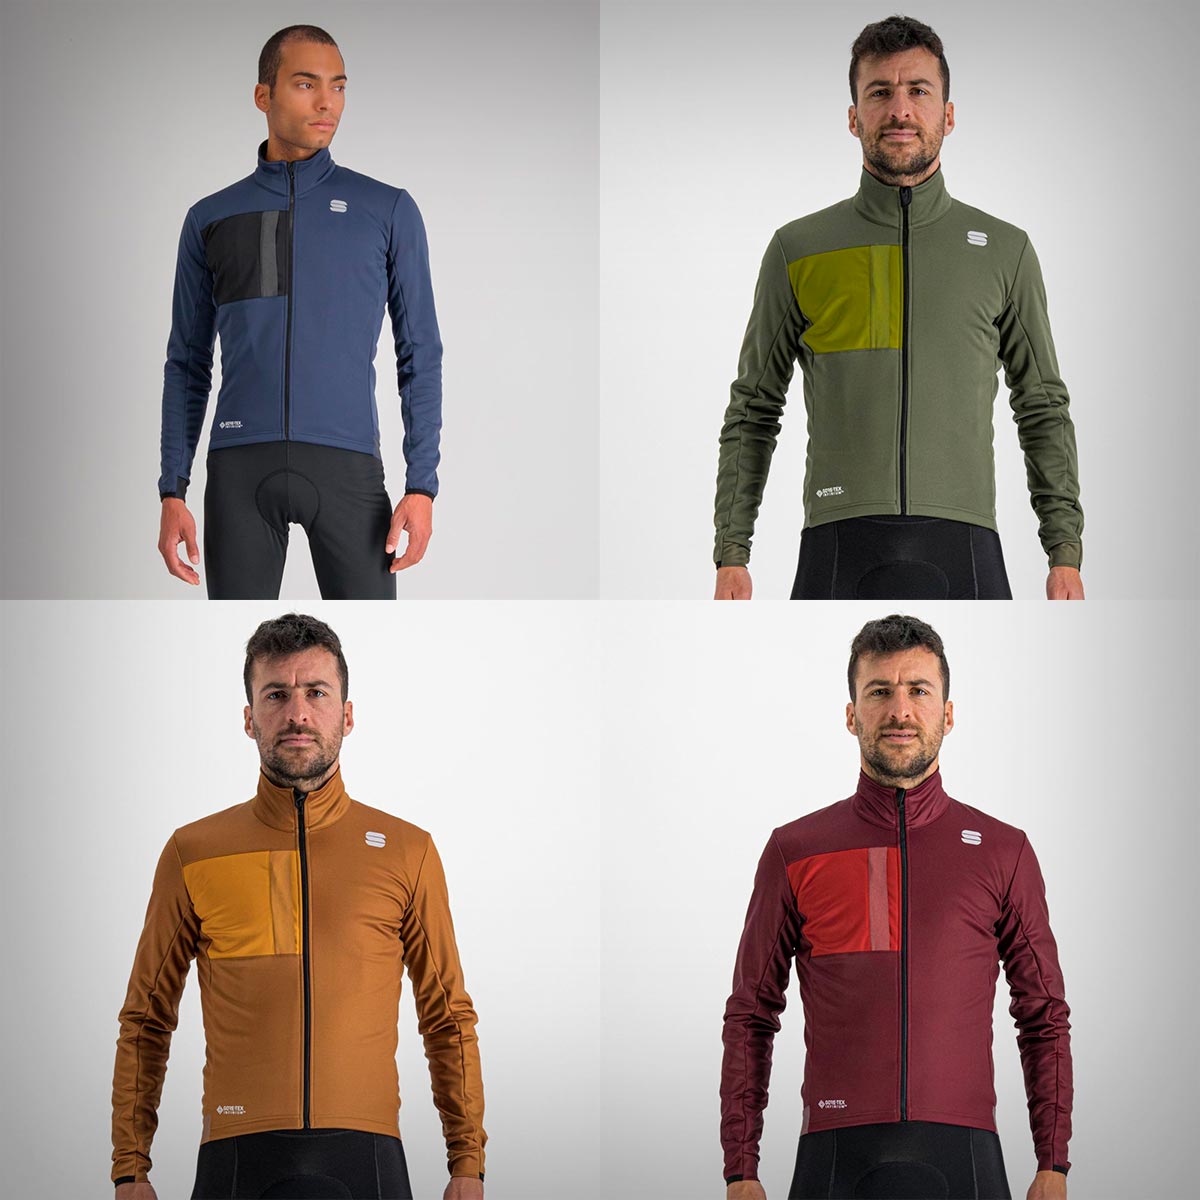 La Sportful Super Jacket, la mejor chaqueta de invierno de la marca, estrena nuevos colores (y algún detalle extra)